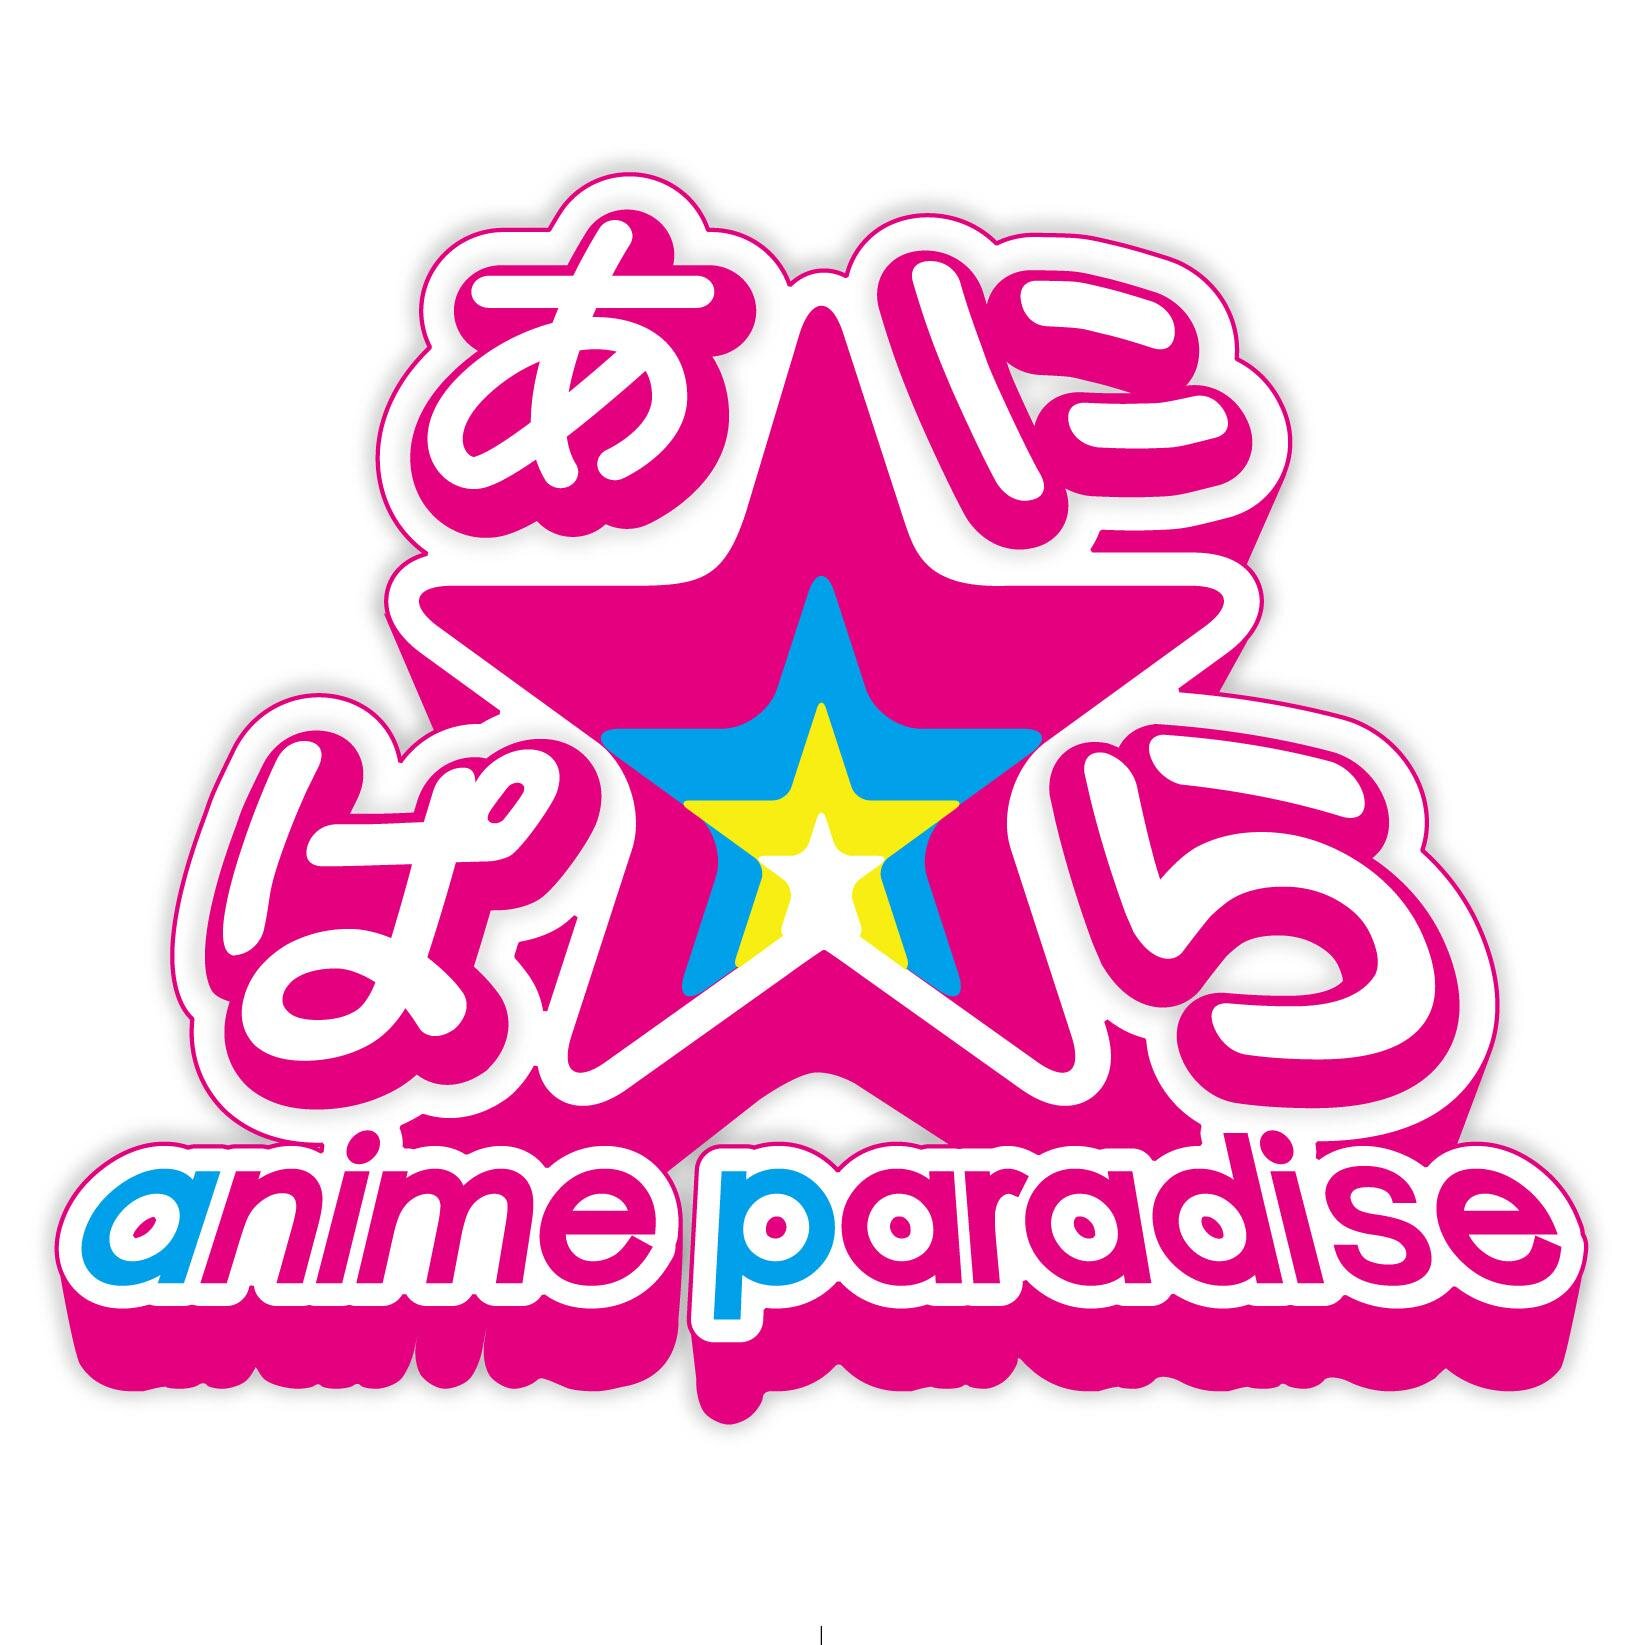 あに☆ぱら～anime paradise～公式Twitterです☆2016年3月27日(日)声優アーティストの祭典が東北にて開催‼